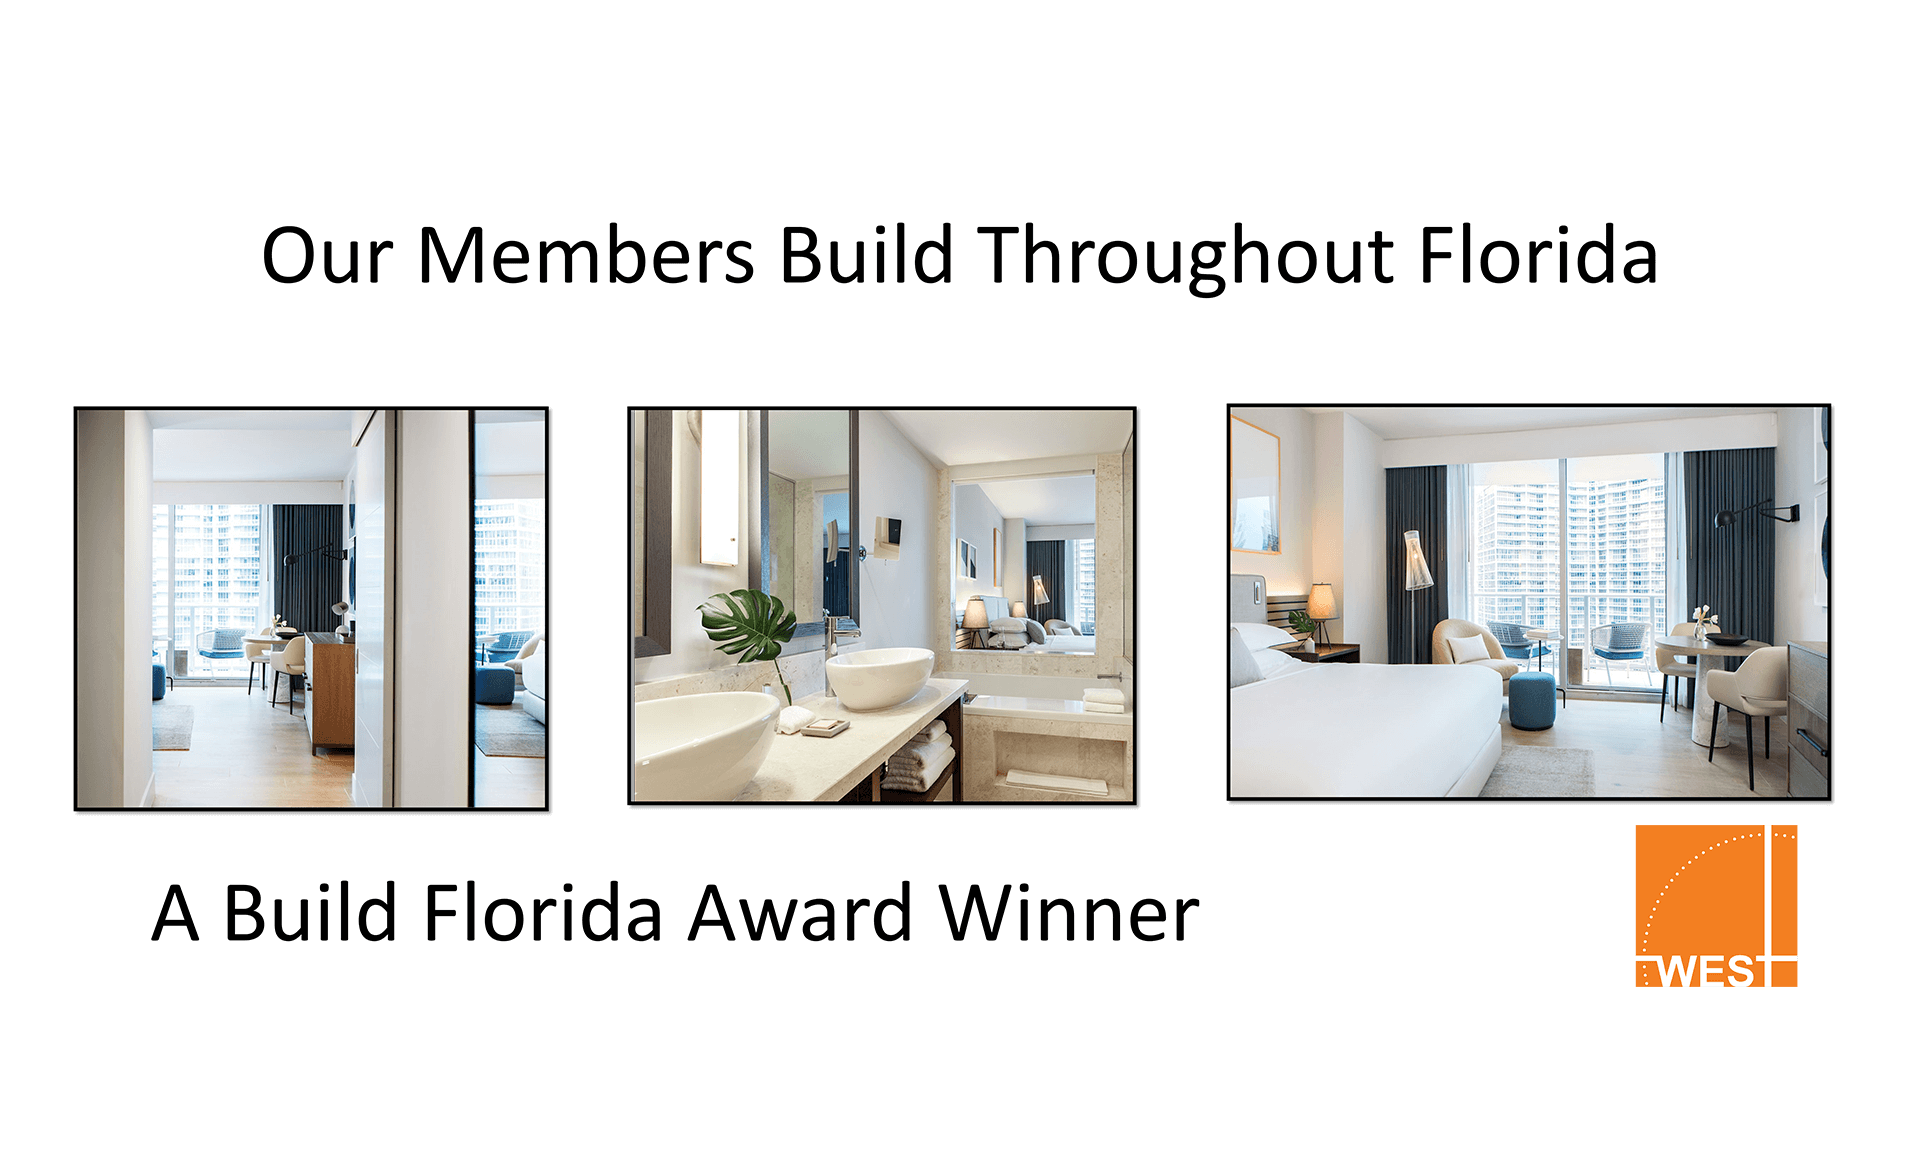 A Build Florida Award Winner west